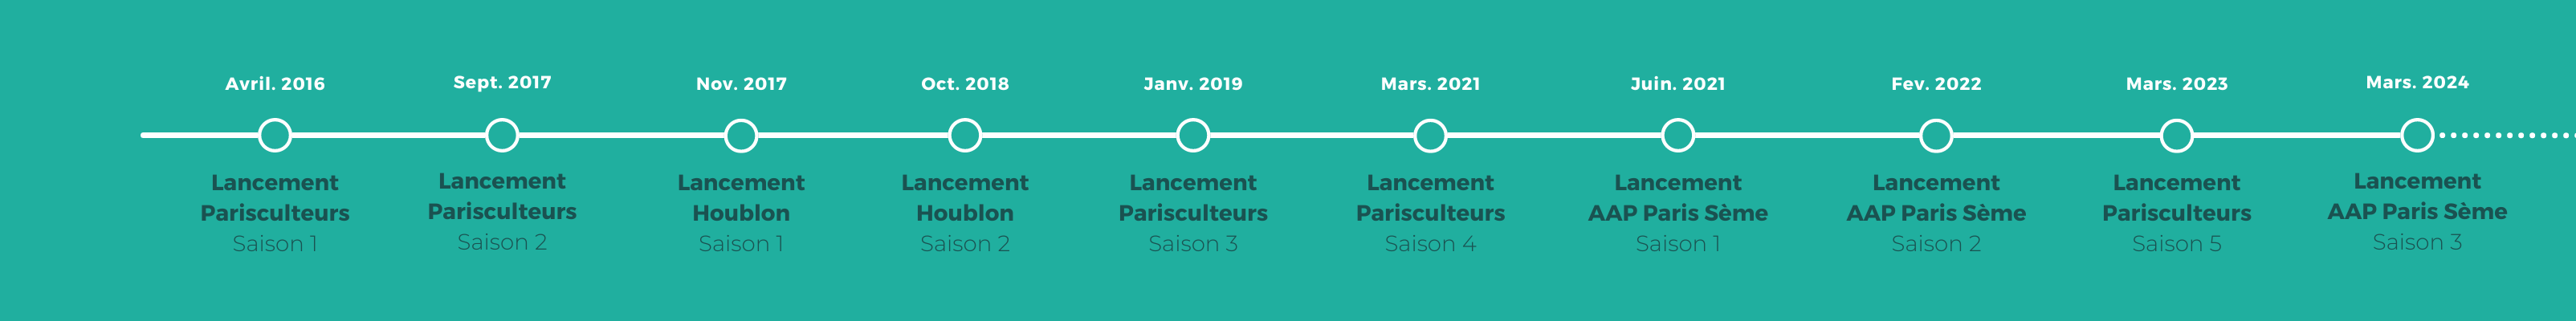 Parisculteurs Timeline